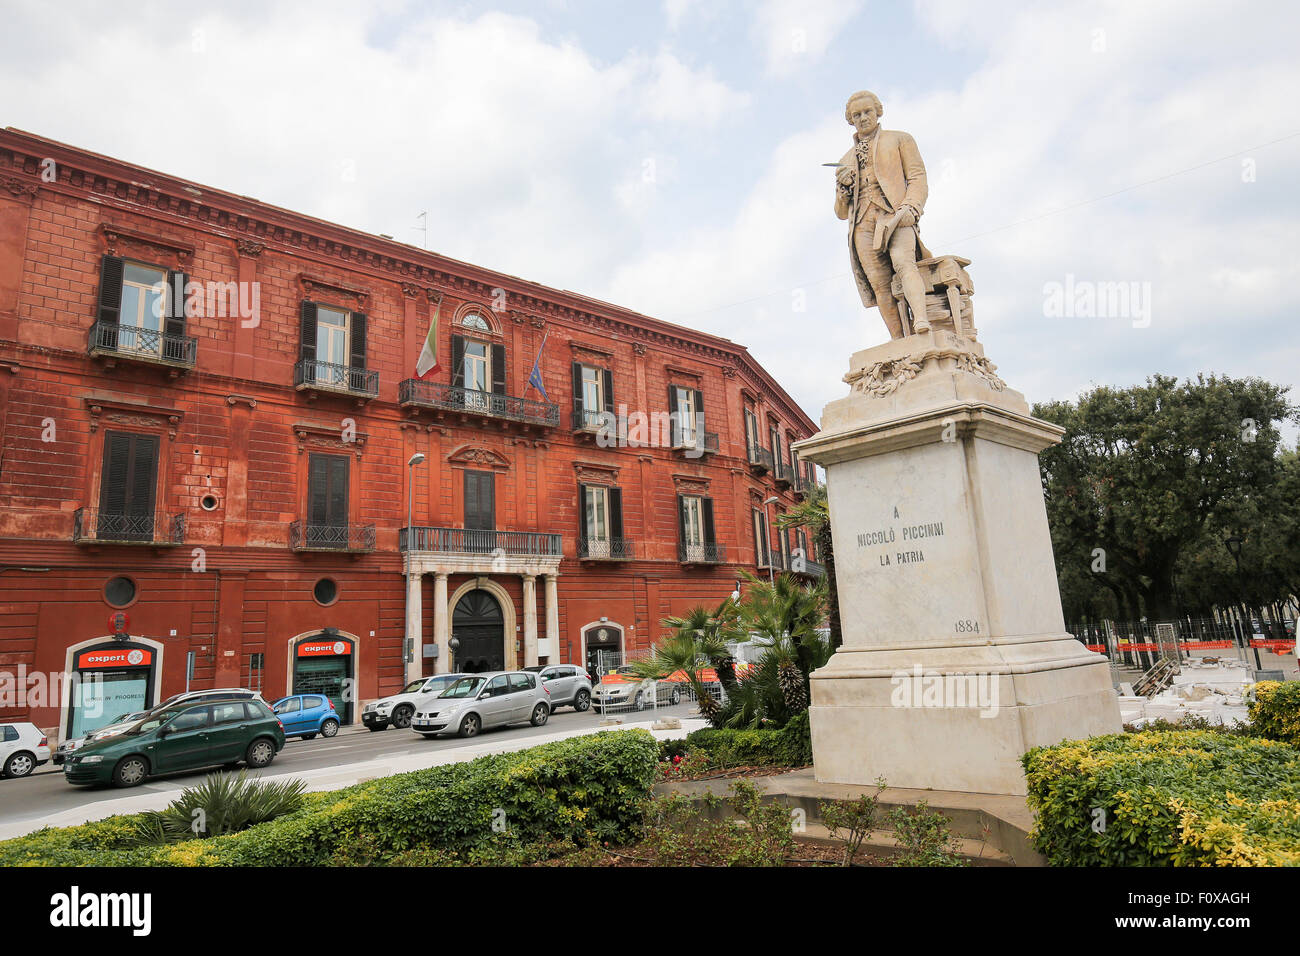 BARI, Italien - 16. März 2015: Statue des 18. Jahrhunderts italienischen Komponisten Niccolò Piccinni am Teatro Piccinni in Bari, Italien Stockfoto